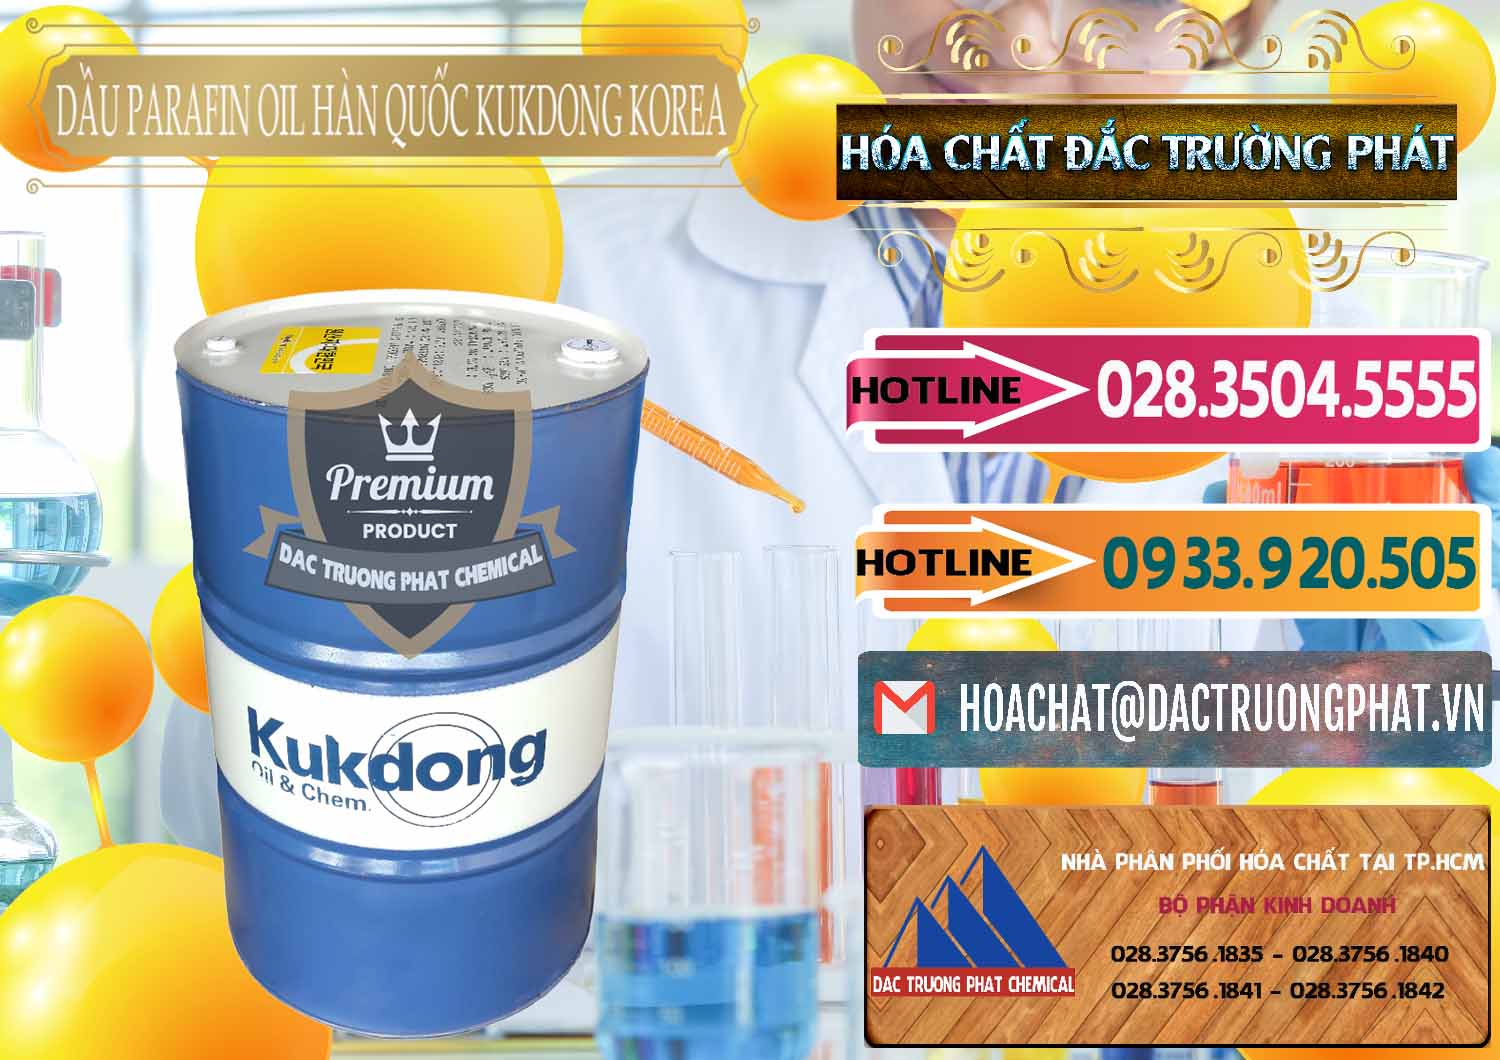 Đơn vị chuyên bán ( phân phối ) Dầu Parafin Oil Hàn Quốc Korea Kukdong - 0060 - Nhà cung ứng _ phân phối hóa chất tại TP.HCM - dactruongphat.vn